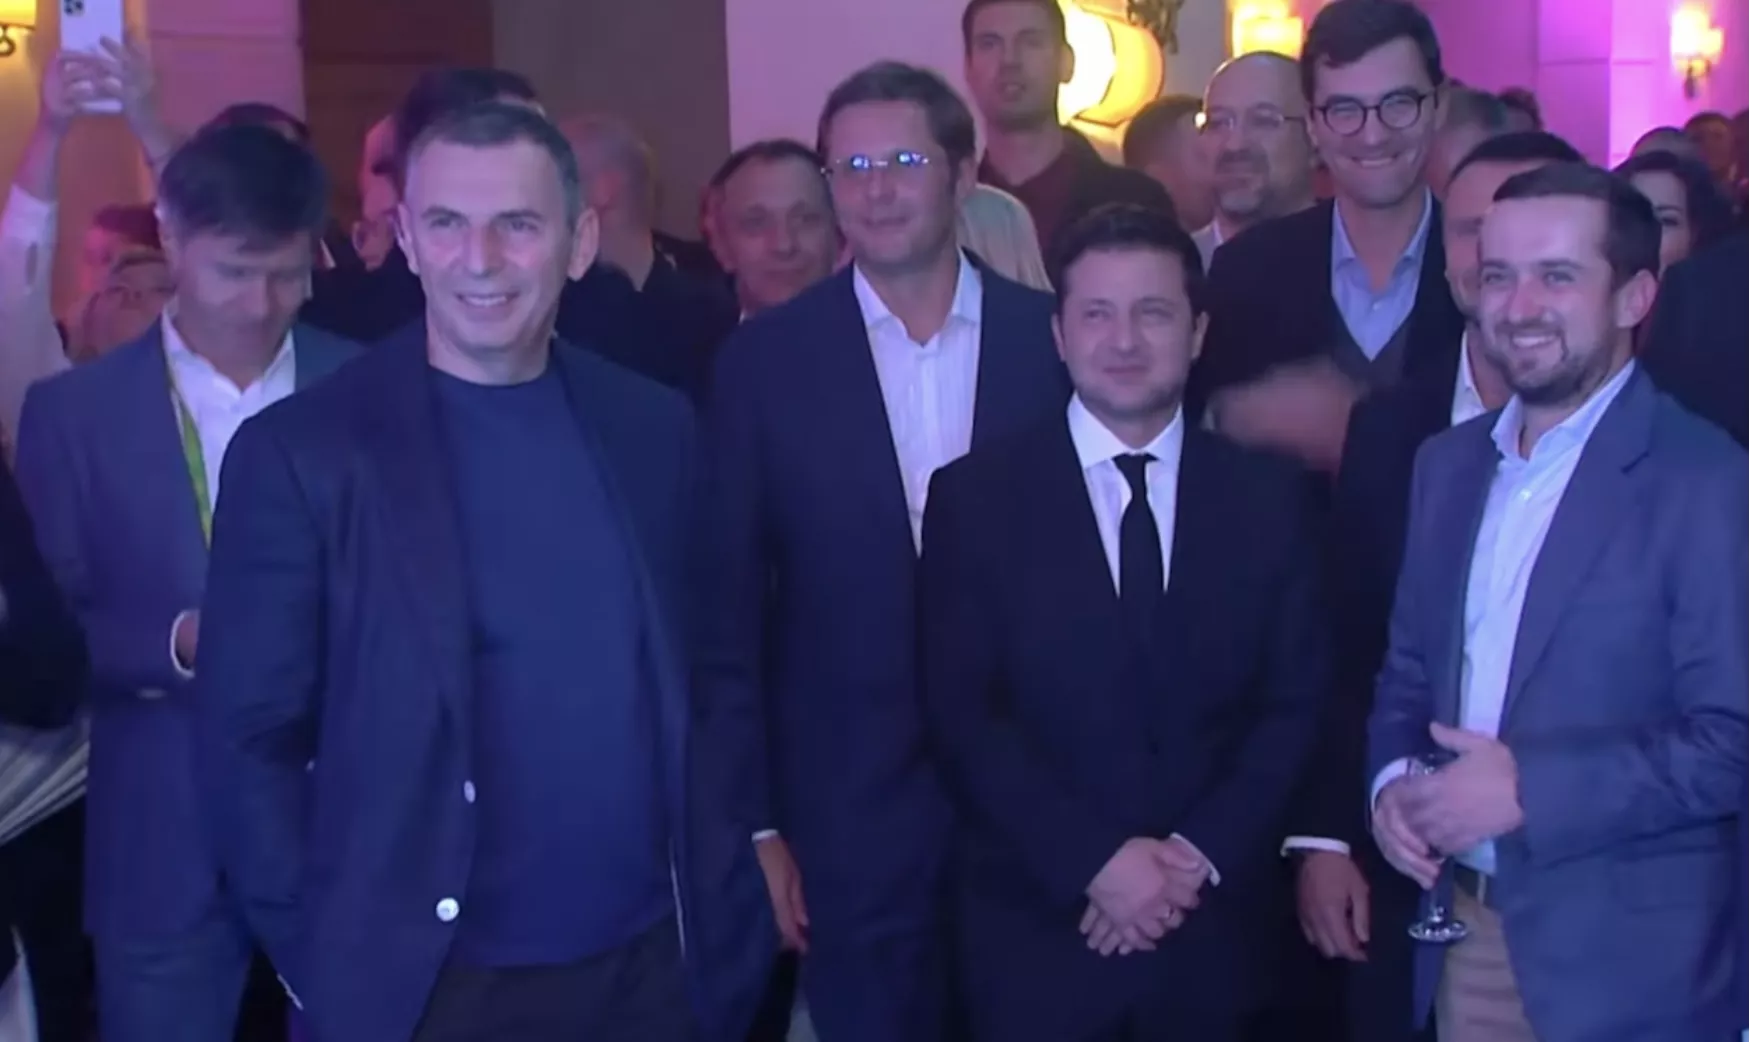 Президент Зеленський і його помічники стримуються, аби не піти до танцю / Cкріншот із передачі "Світське життя"